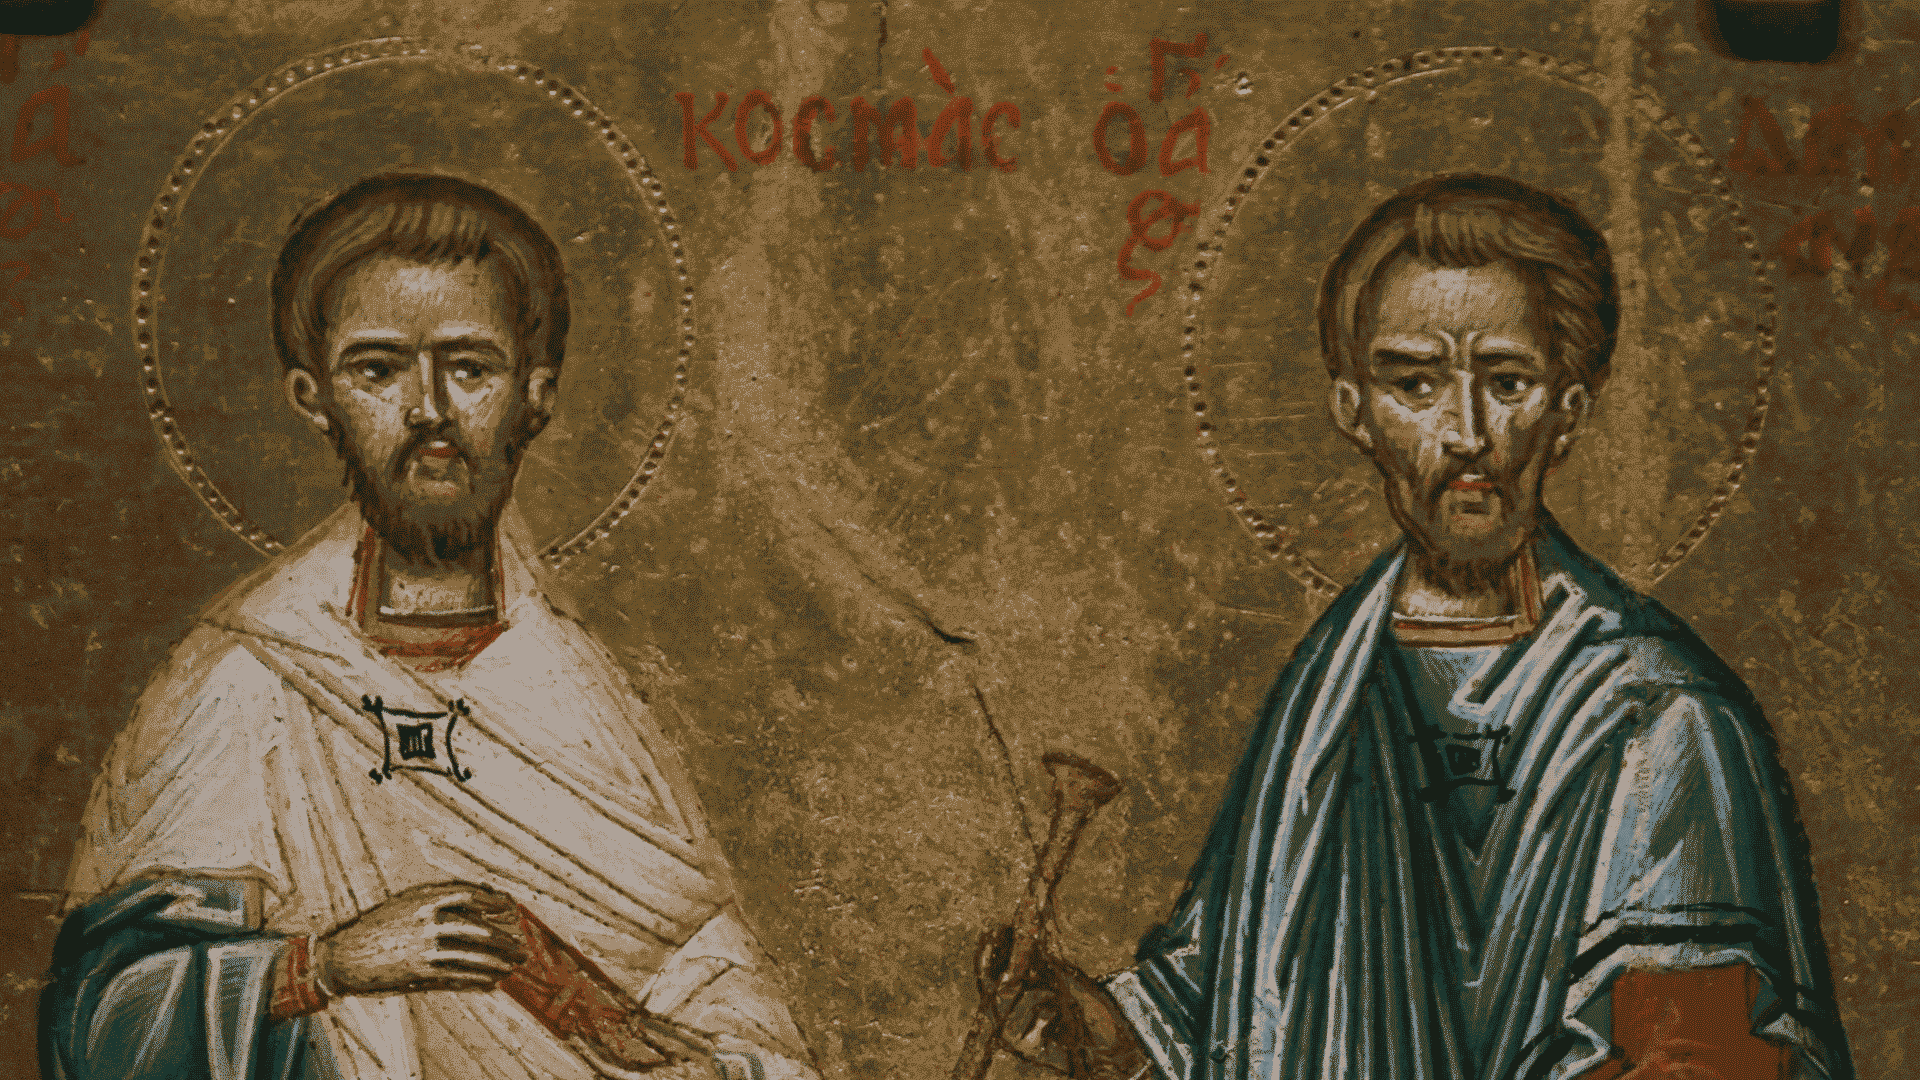 Peter and Paul, the pillars of the Christian faith